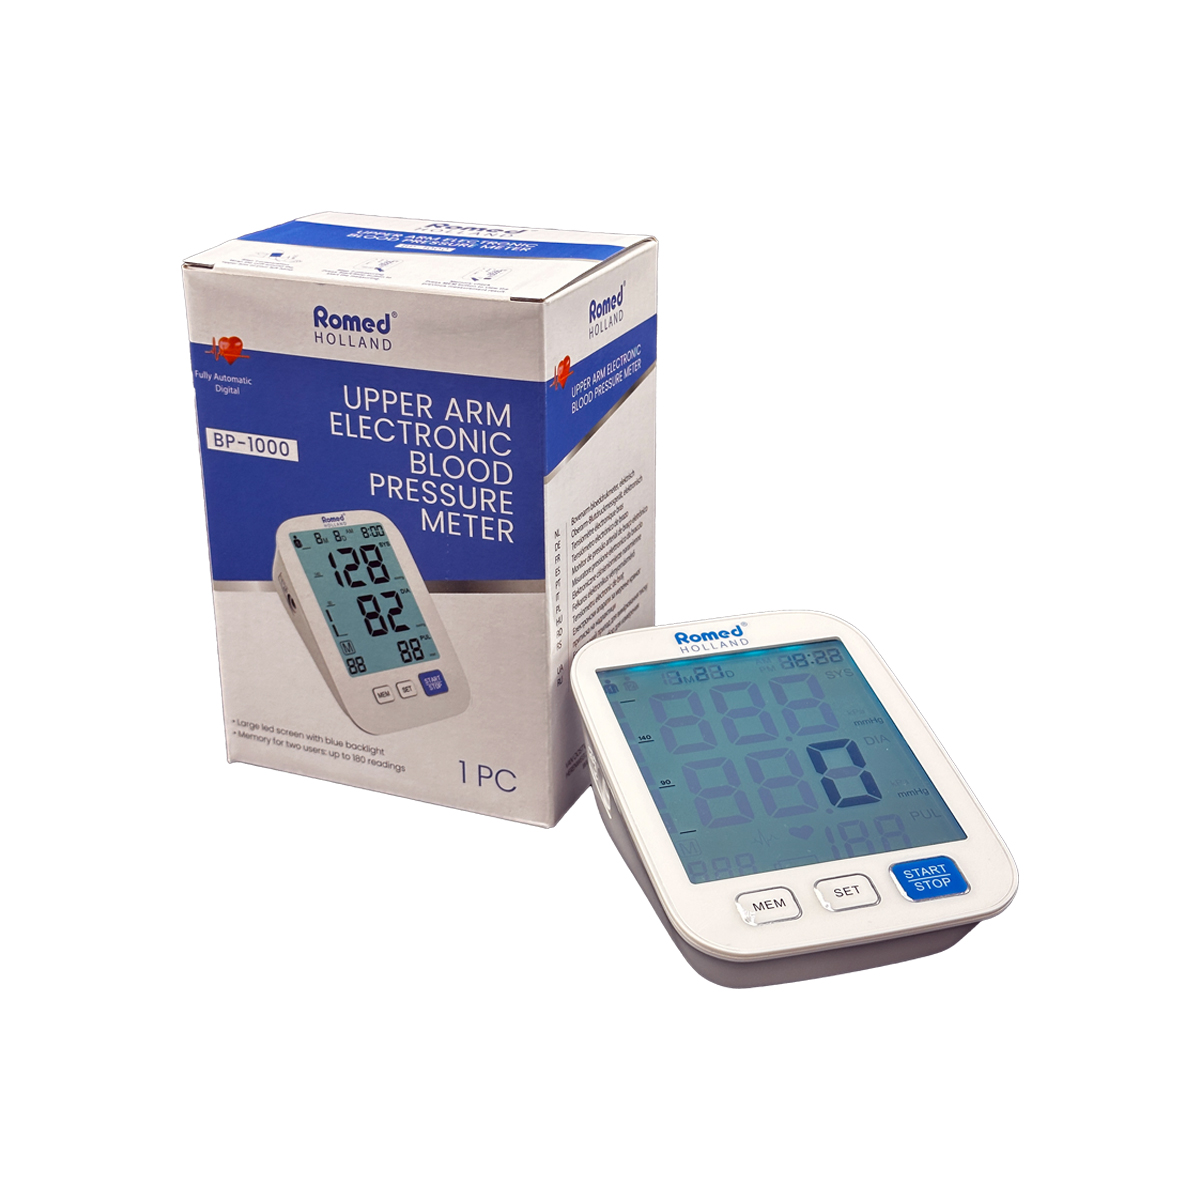 BP-1000 Romed Blutdruckmesser, vollautomatisch, elektronisch, pro Stück in einer Schachtel, 10 Stück im Karton.